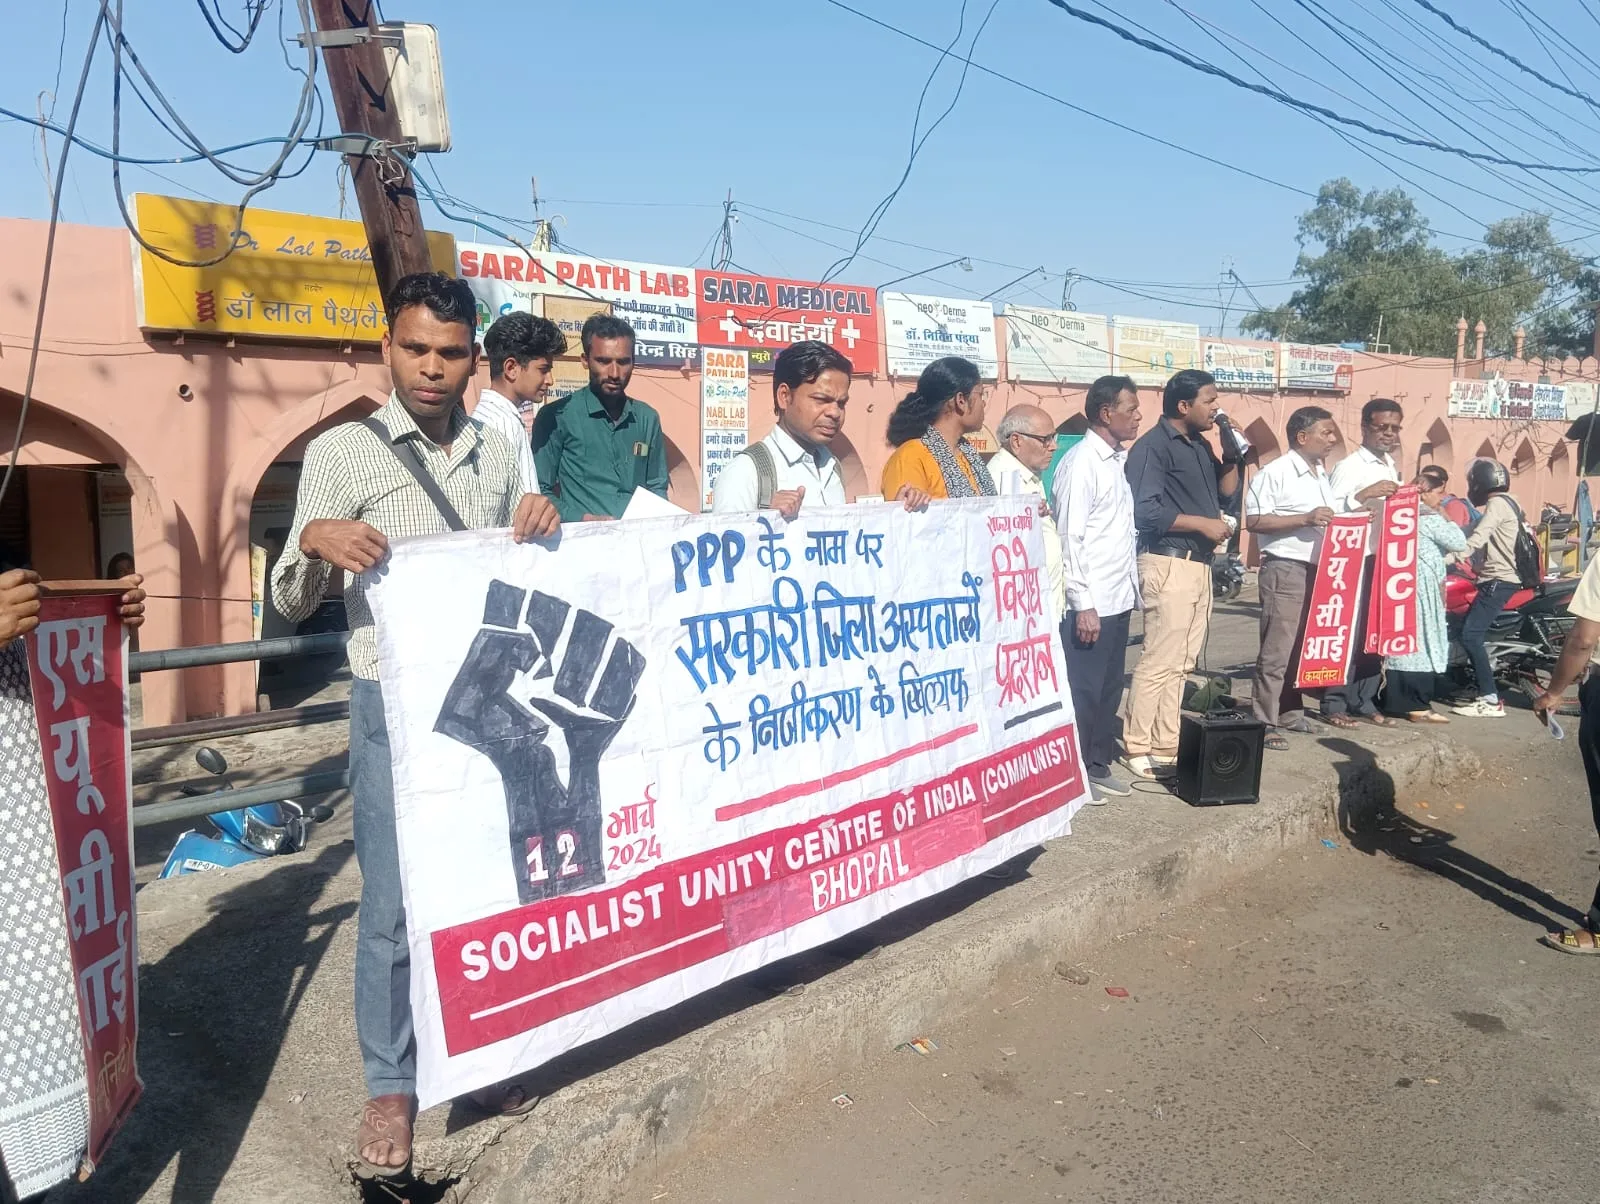 मध्य प्रदेश के सरकारी जिला हॉस्पिटलों को पीपीपी मॉडल पर निजीकरण के खिलाफ एस यू सी आई (कम्युनिस्ट) पार्टी द्वारा हमीदिया हॉस्पिटल के सामने किया गया विरोध प्रदर्शन | New India Times